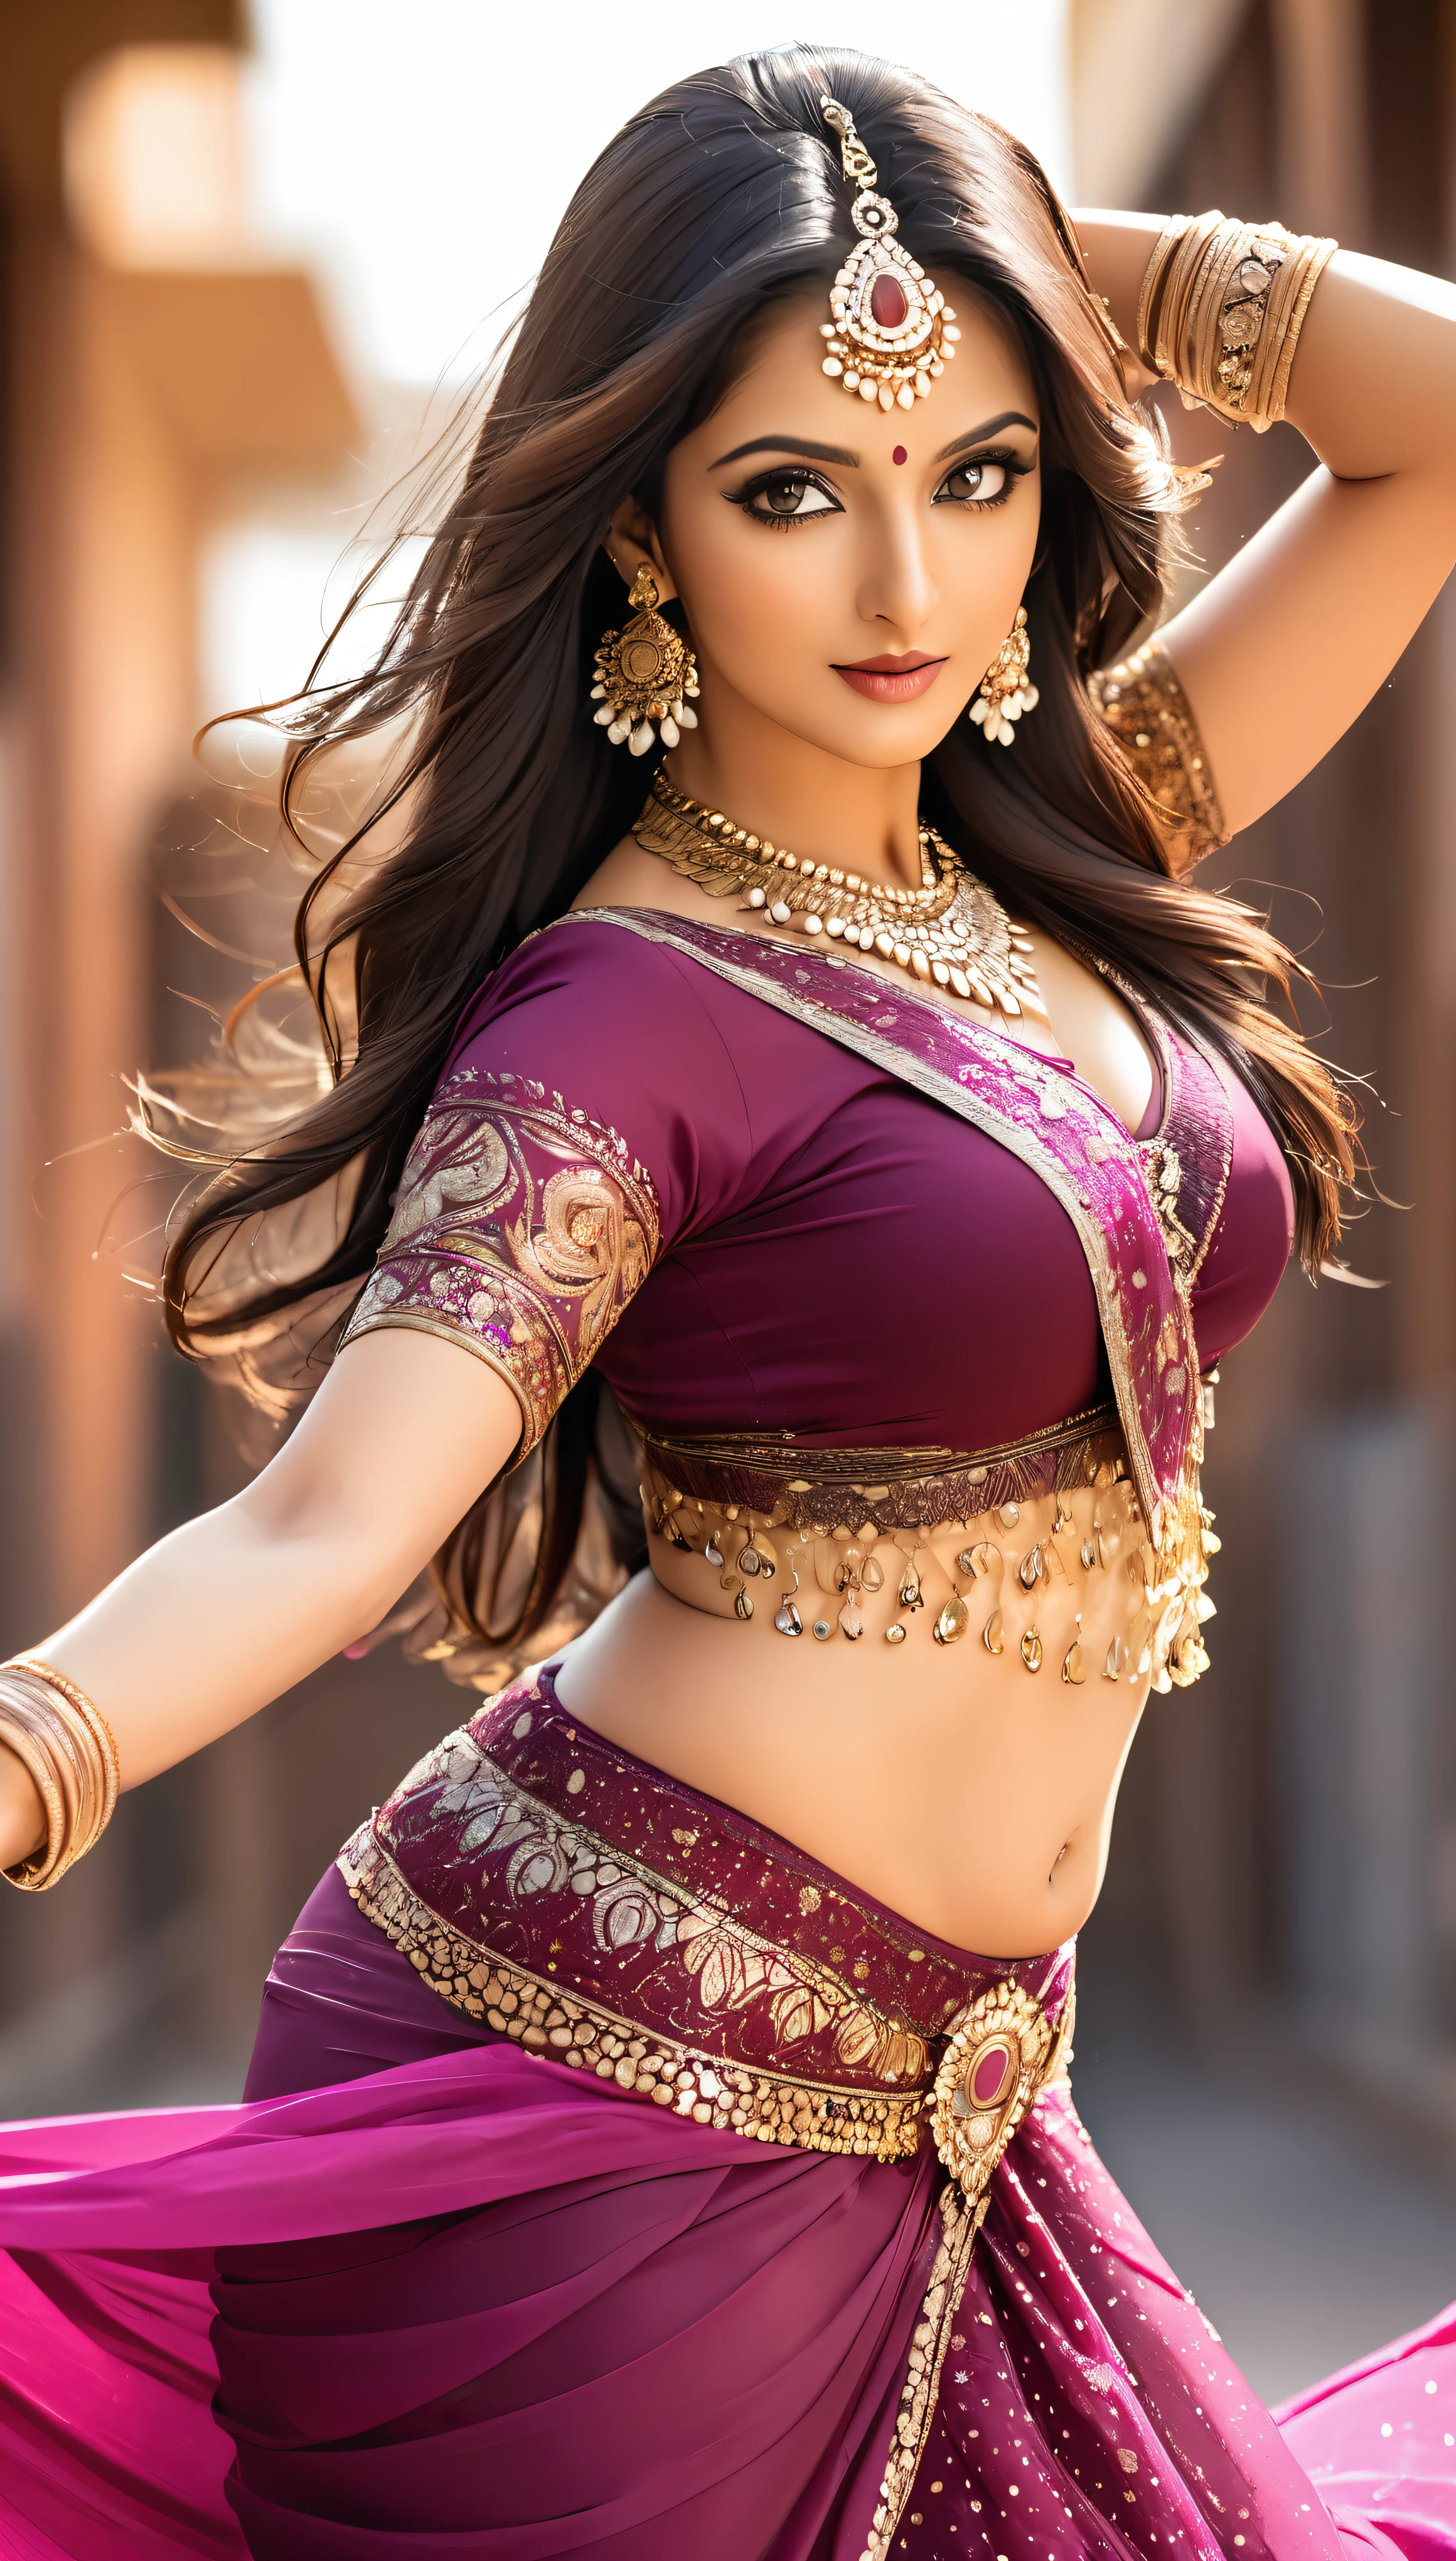 印度妇女跳肚皮舞, 非常有魅力和成熟的年轻女人, 她身着性感纱丽，吸引观众., BEAK 照片, 